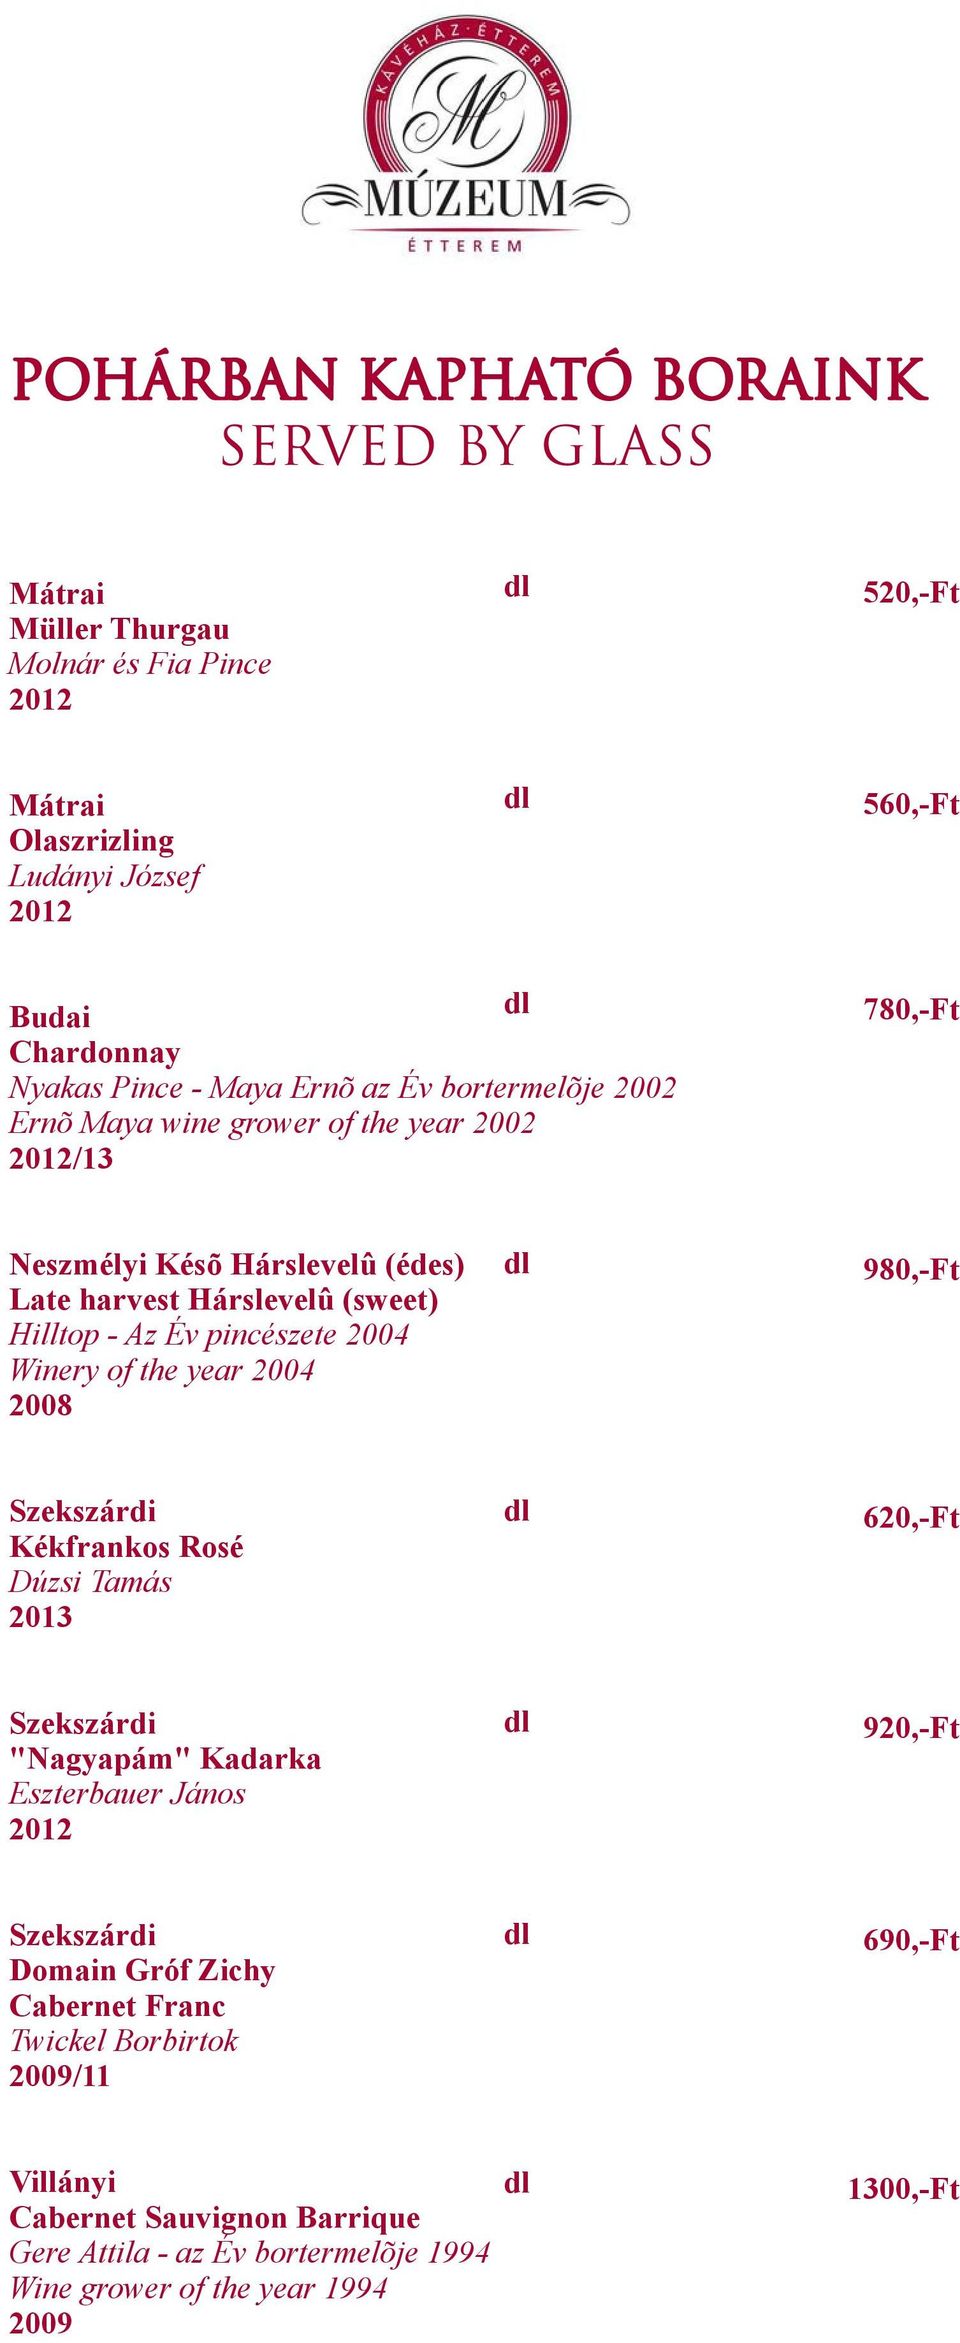 Hilltop - Az Év pincészete 2004 Winery of the year 2004 2008 980,-Ft Kékfrankos Rosé Dúzsi Tamás 2013 620,-Ft "Nagyapám" Kadarka Eszterbauer János 920,-Ft Domain